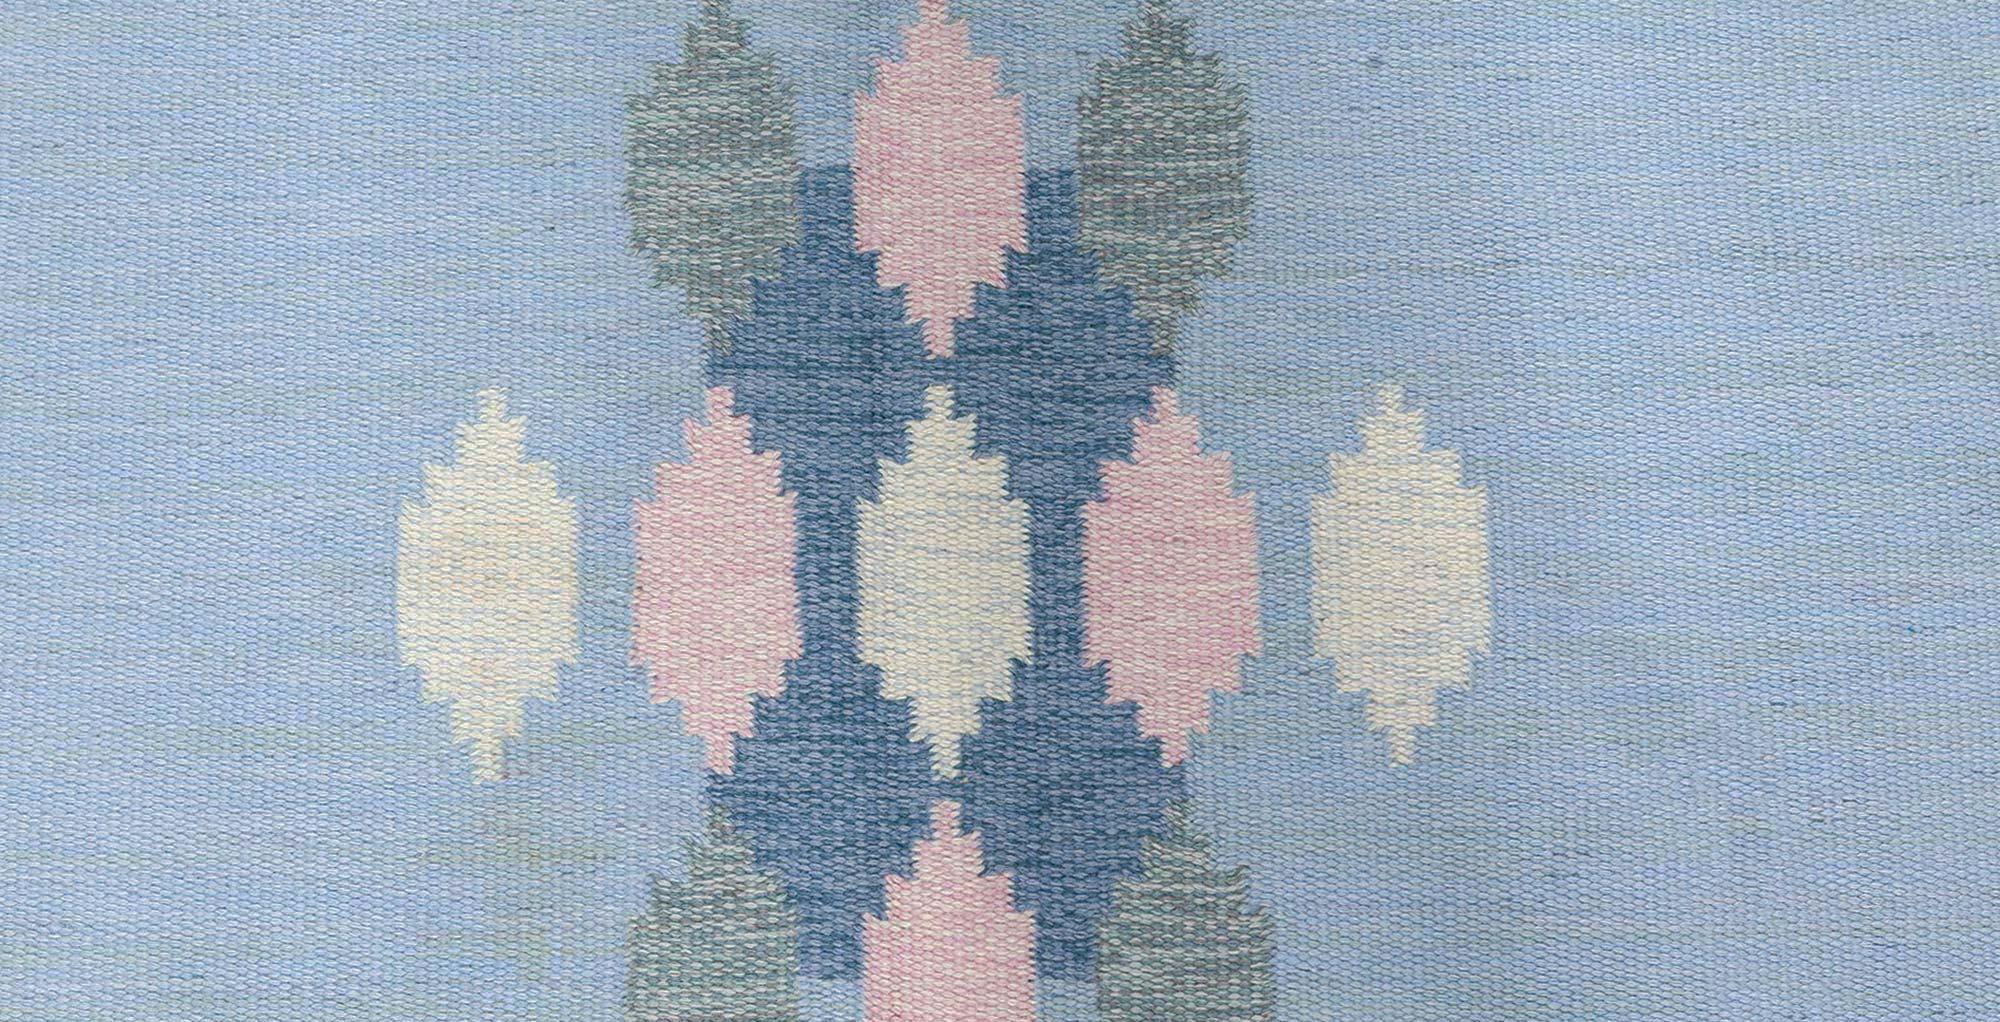 Schwedischer Vintage-Teppich von Ingegerd Silow.
Größe: 6'4